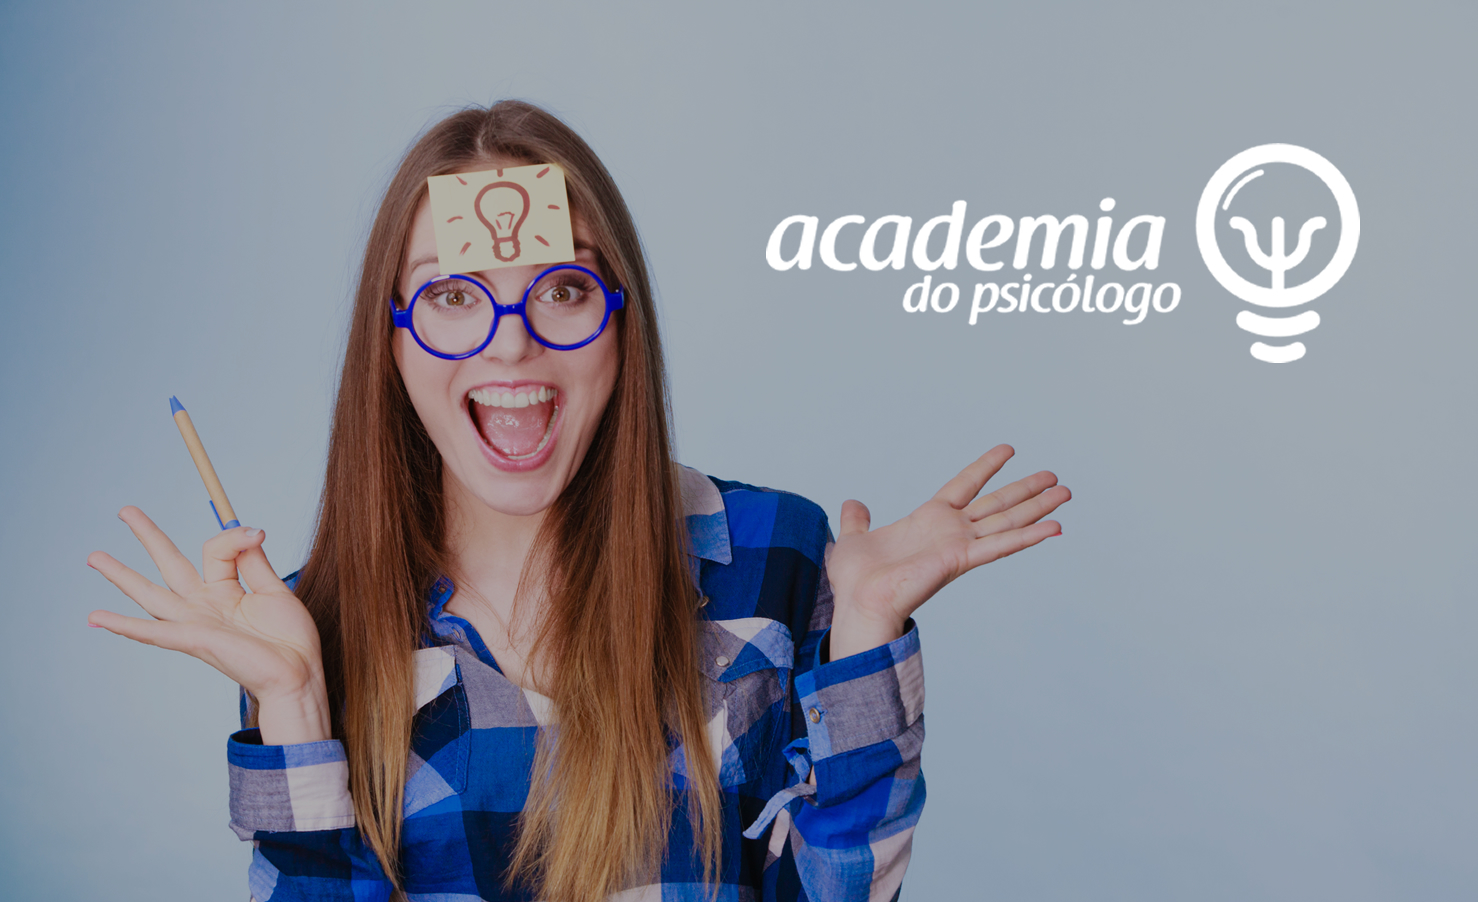 Academia do Psicólogo